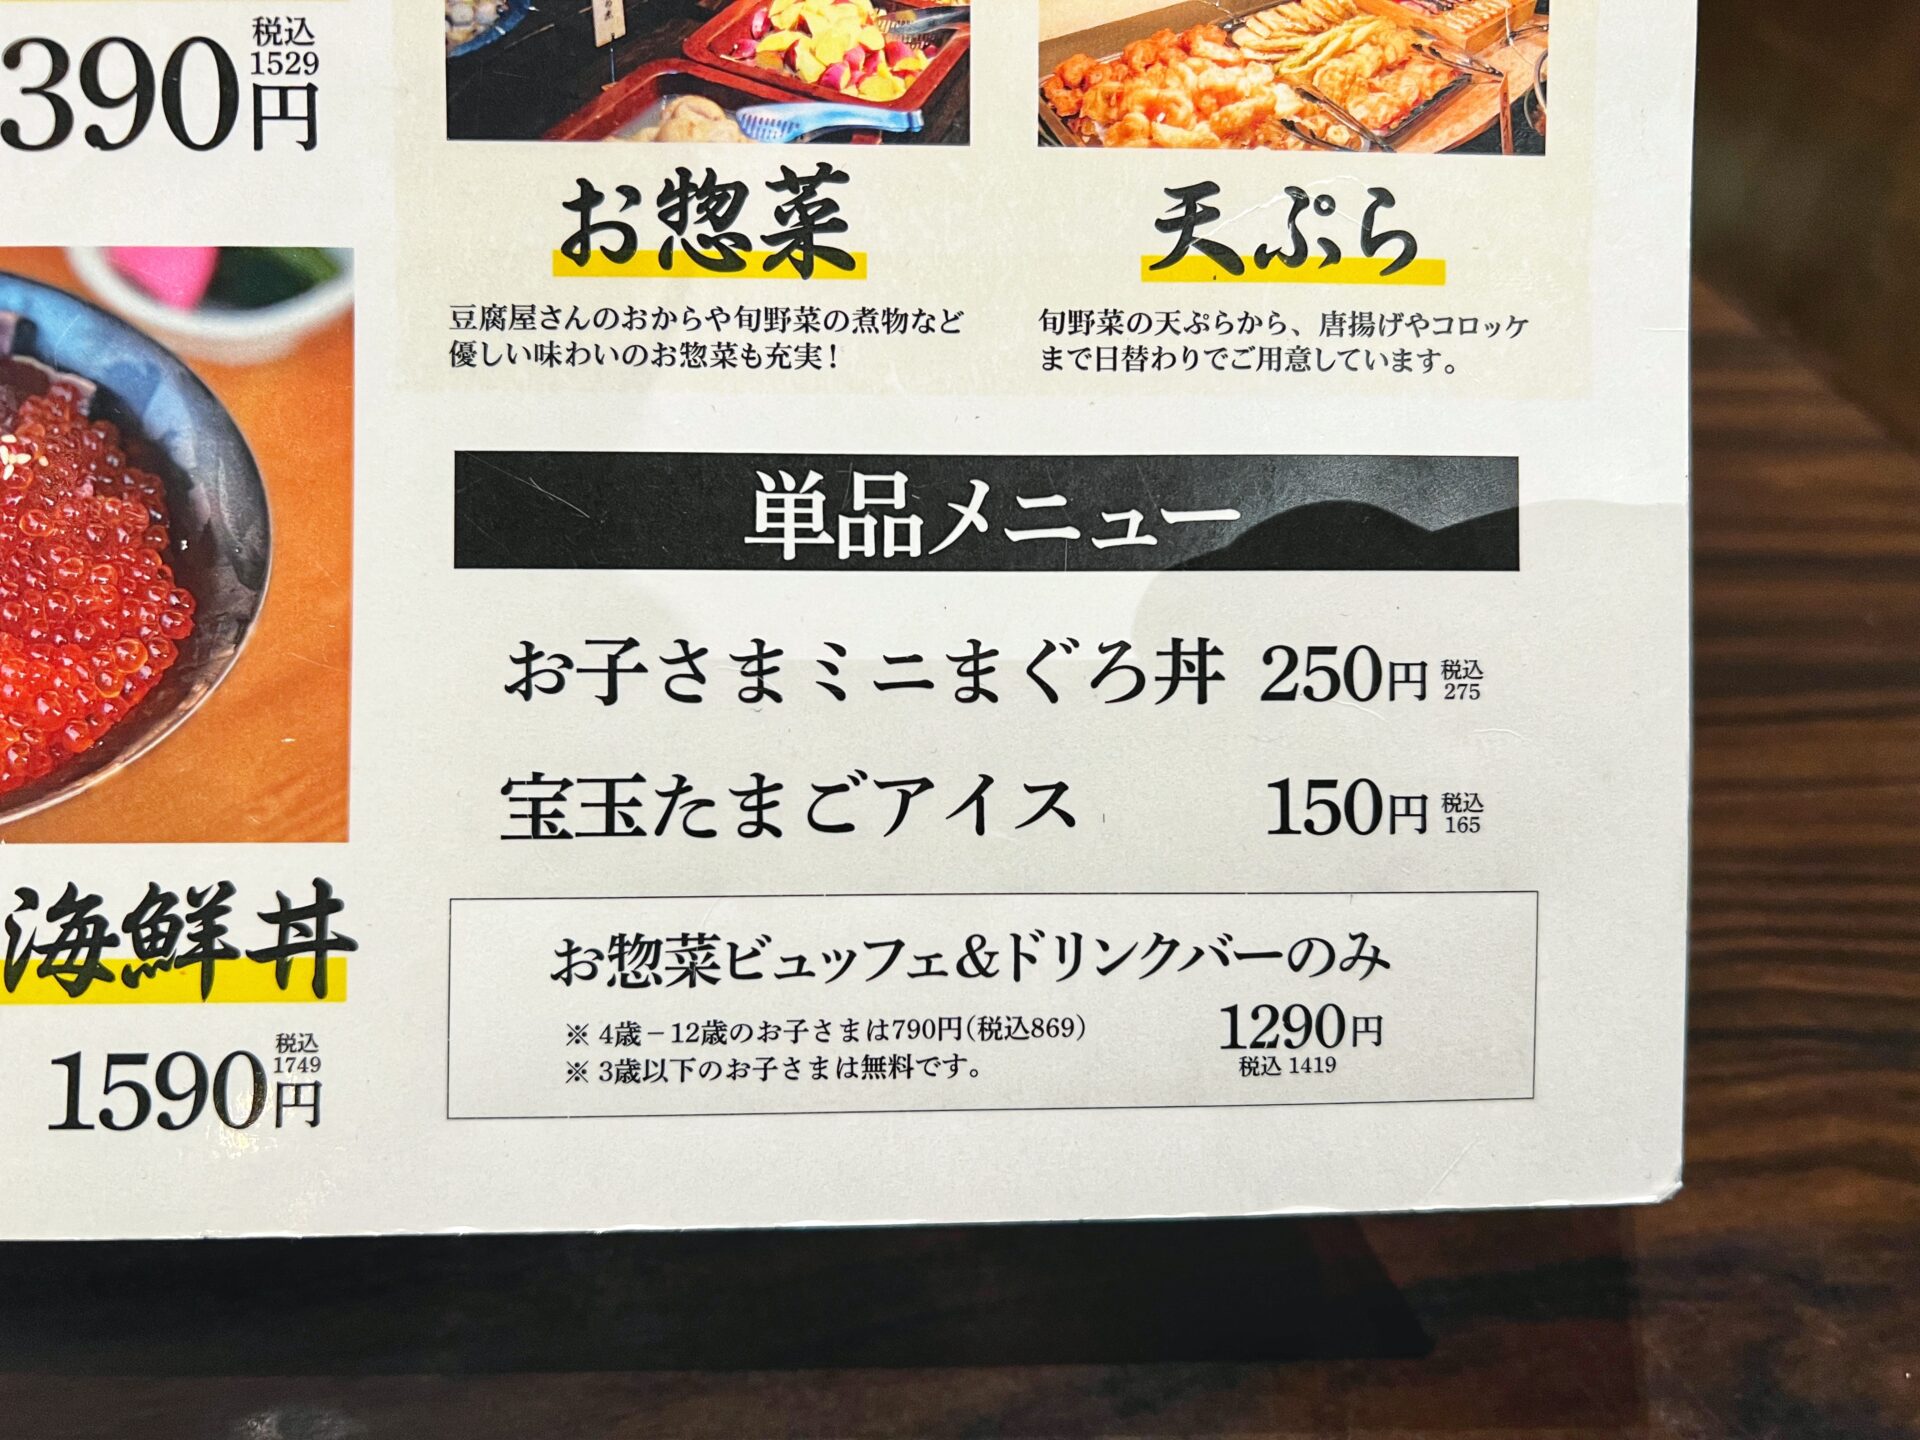 武蔵浦和にある最強ランチビュッフェ「おくどさん」海鮮丼と武蔵野うどんも食べてきた